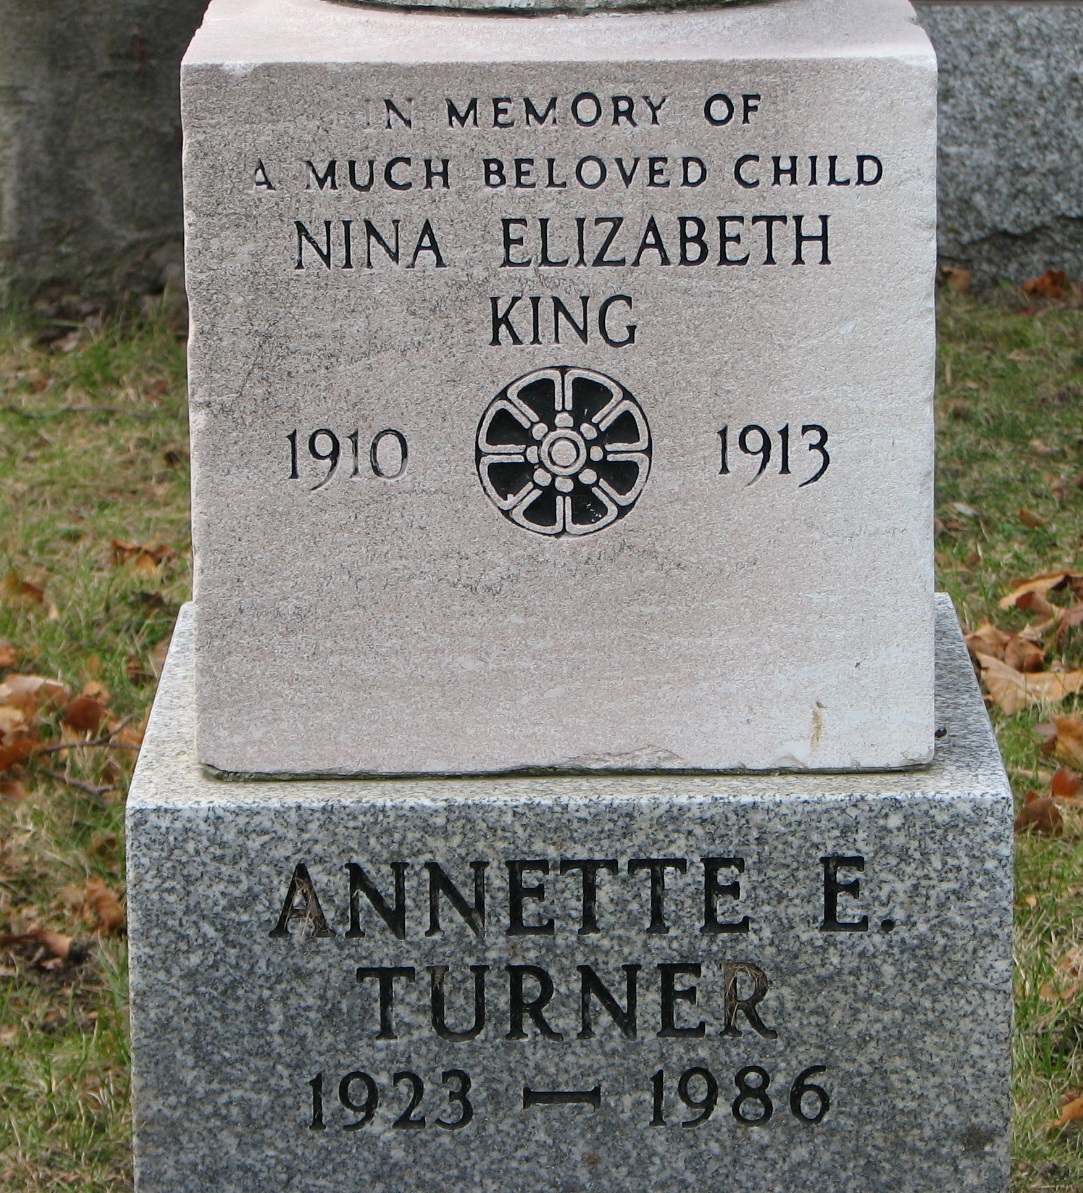 Nina Elizabeth King 1910-1913 _ Annette E. Turner 1923-1986